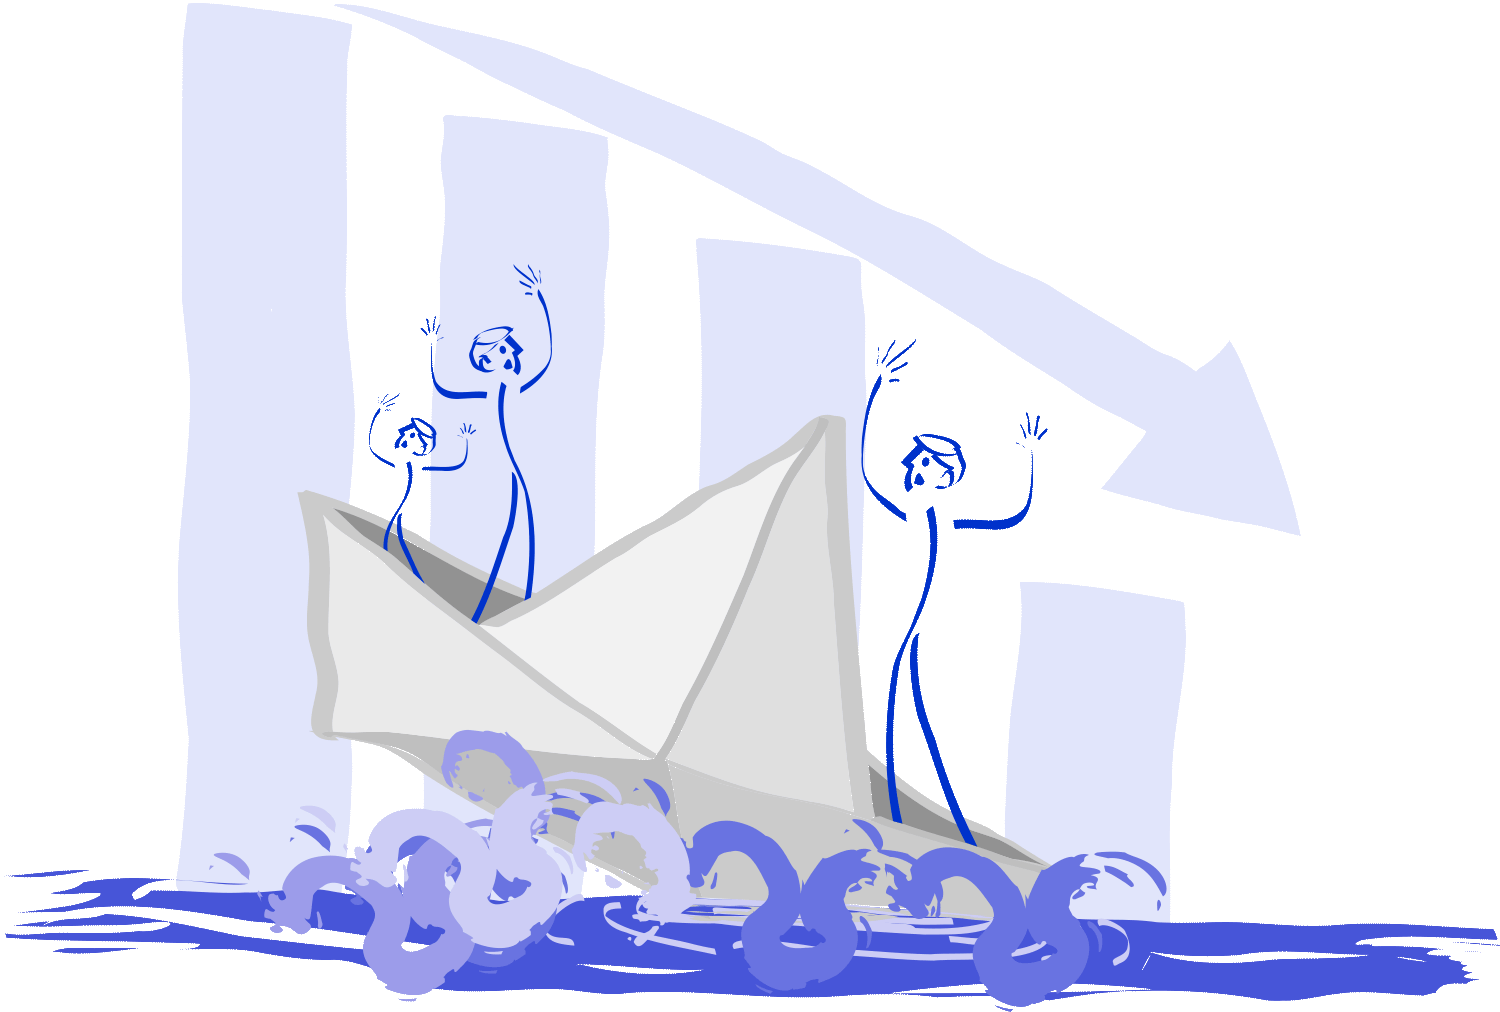 A ilustração retrata a decadência de uma empresa, simbolizada por um barco de papel afundando, enquanto uma seta em queda exponencial ao fundo indica o declínio acentuado. Ilustração por Nêio Mustafa.